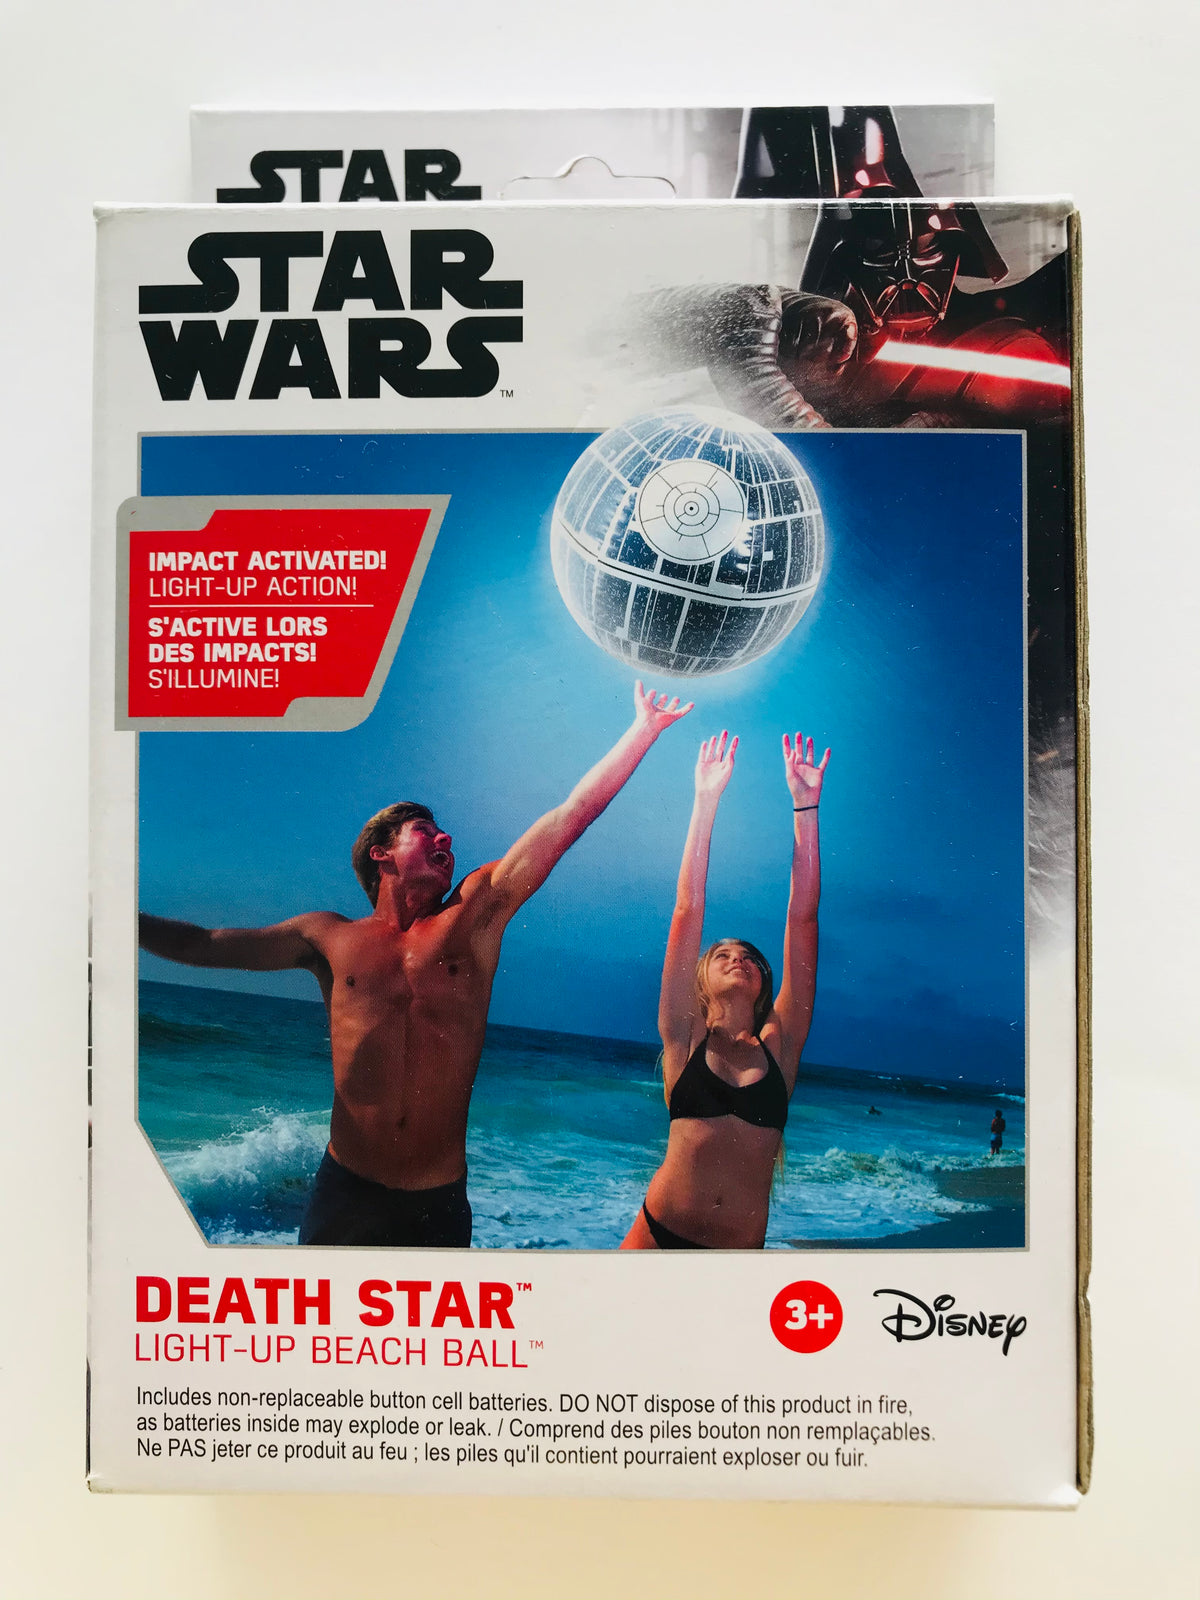 Death Star Light-up Beach Ball